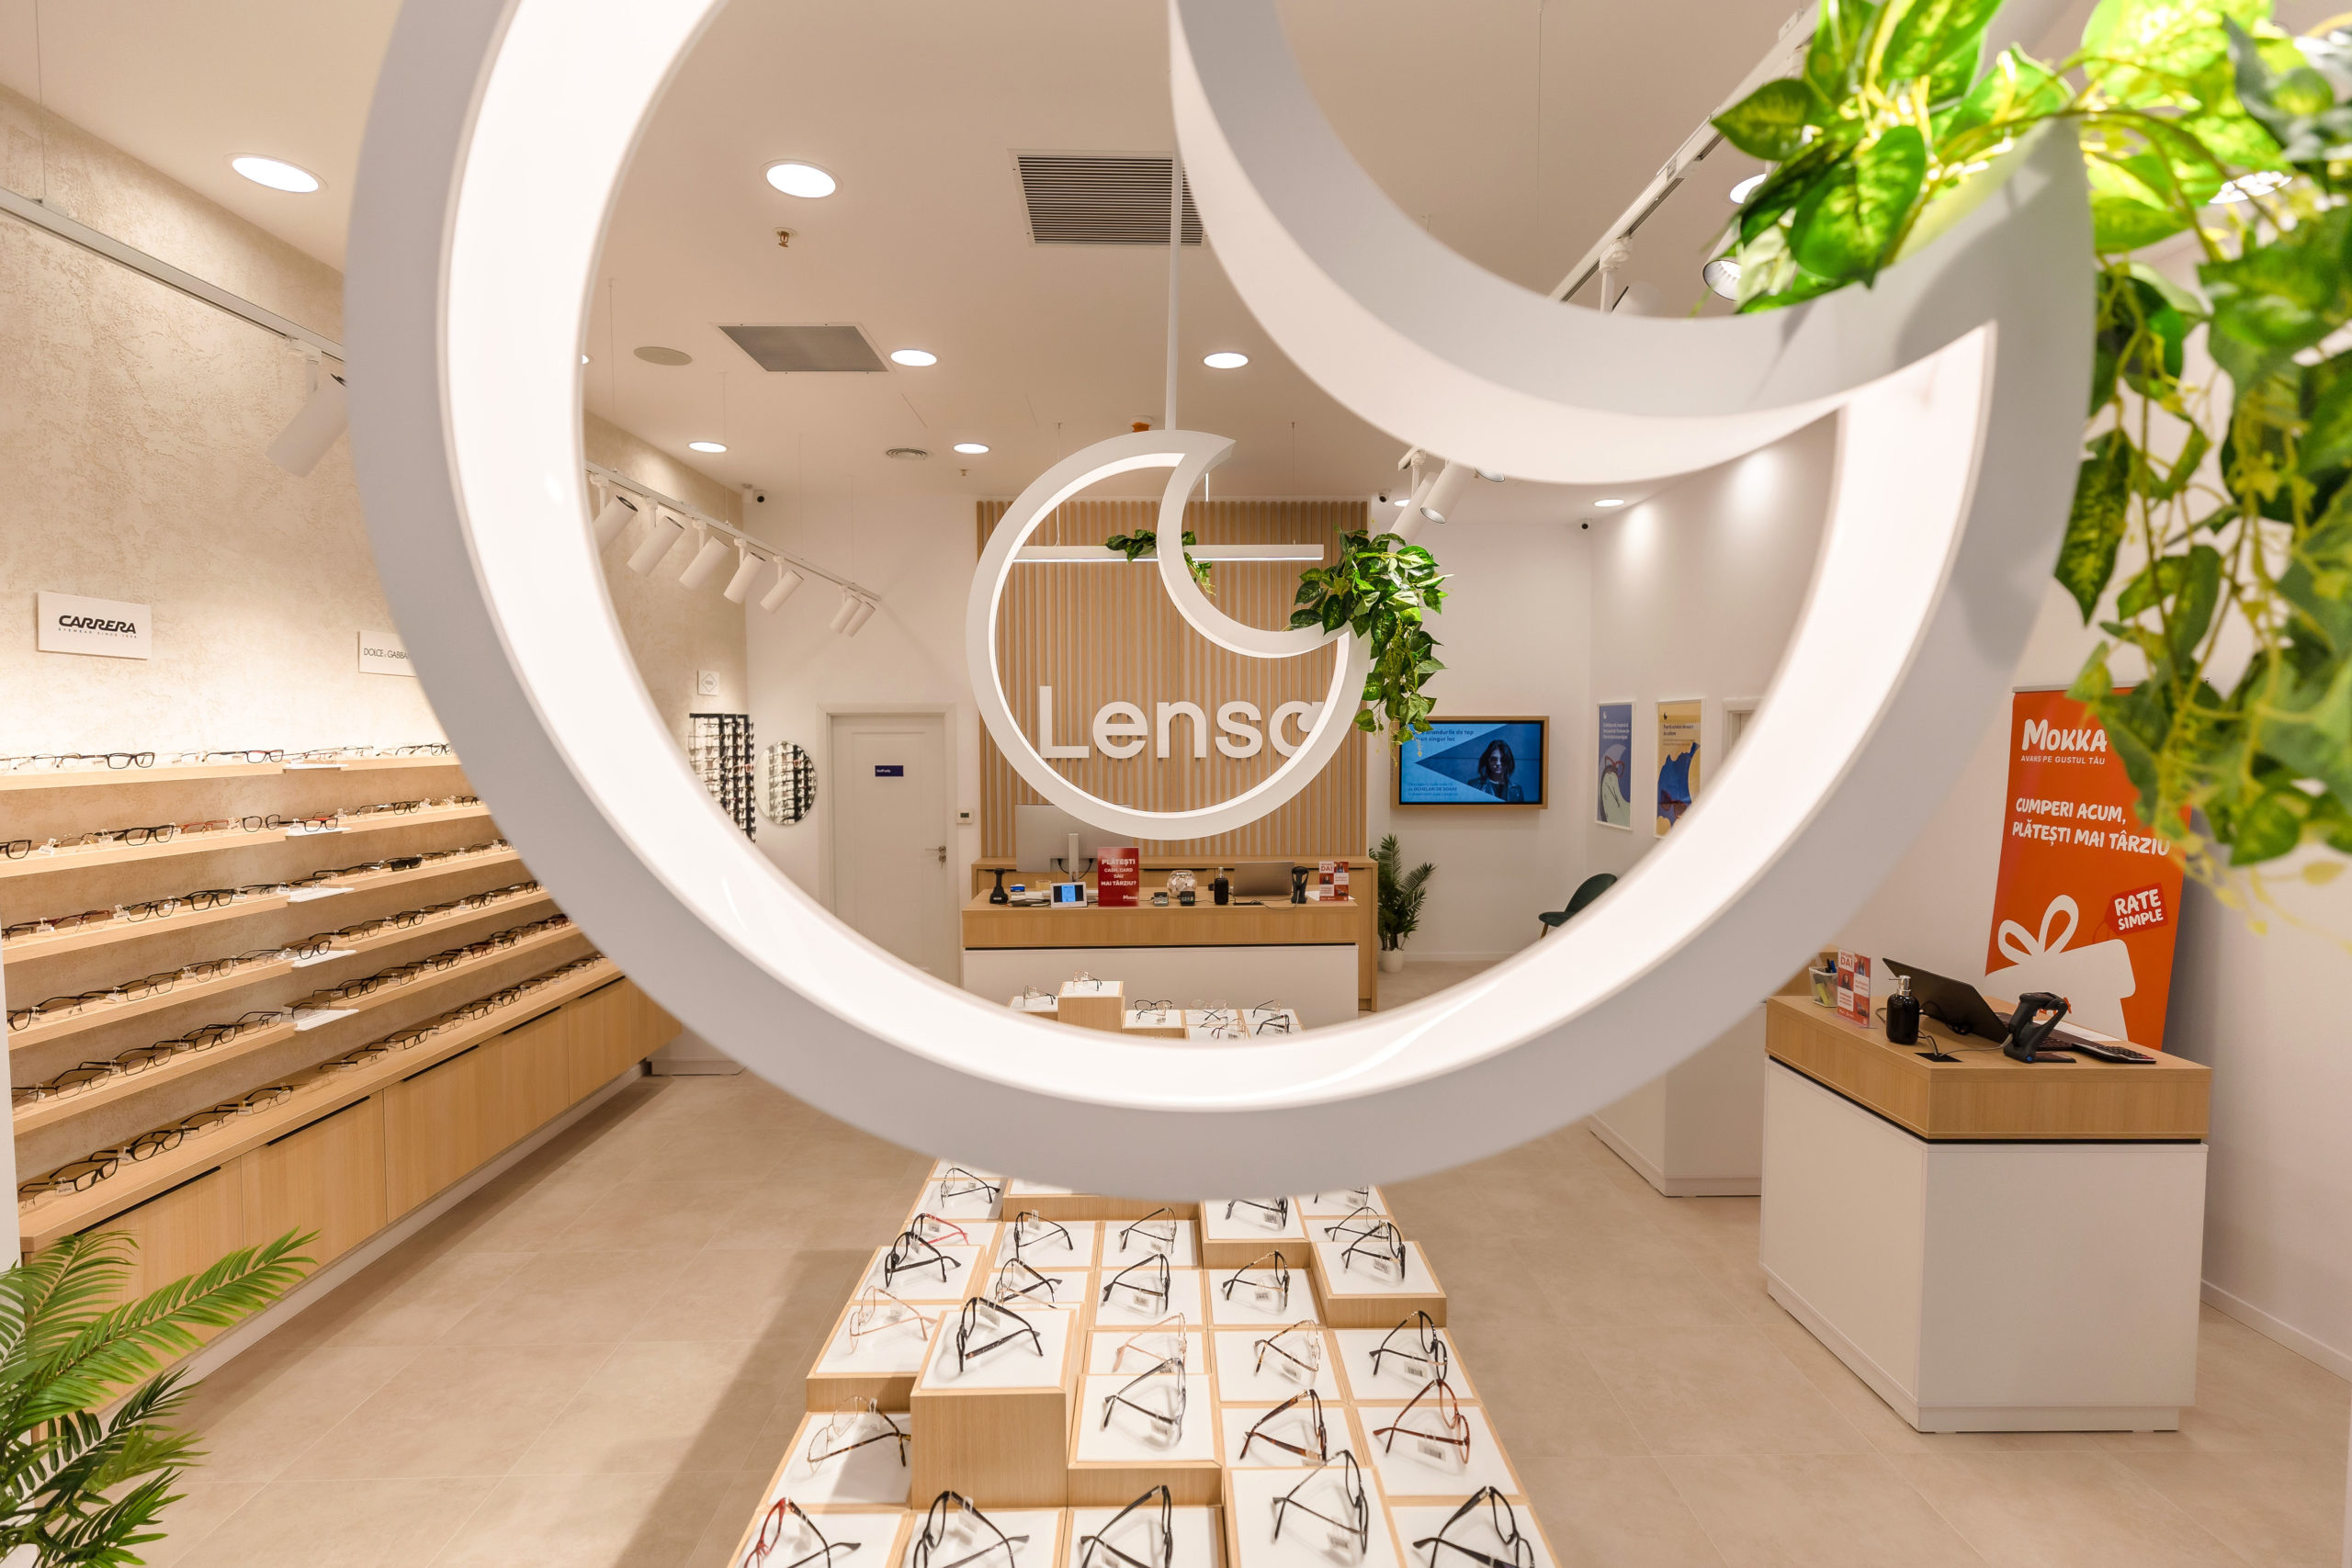 Retailerul de optică Lensa s-a extins în afara ţării şi a deschis primul magazin din Chişinău. Investiţia se ridică la aproximativ 140.000 de euro